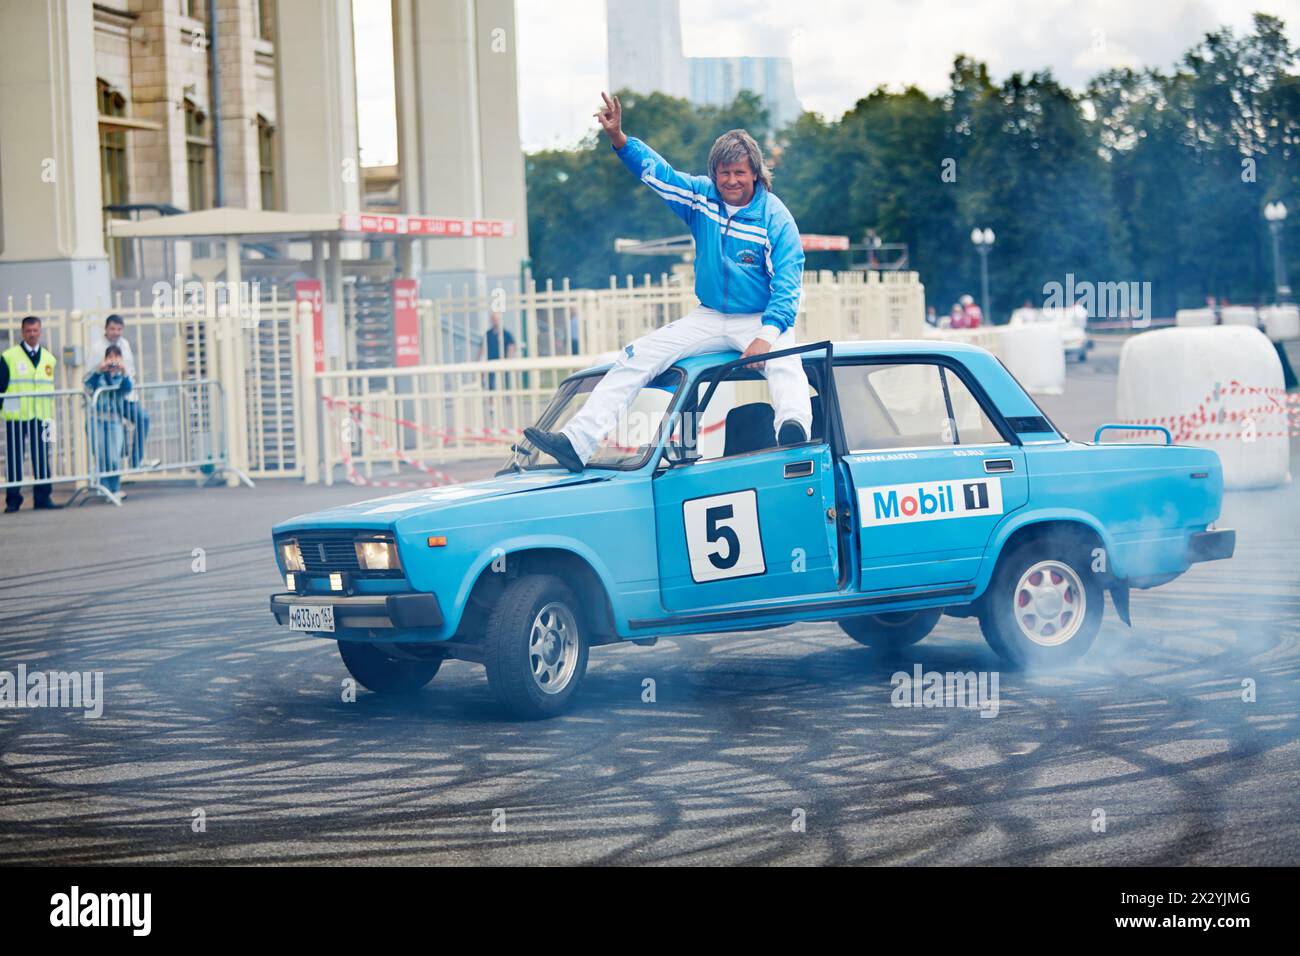 MOSKAU – JUN 30: Demonstration eines Mitglieds des Stuntmen-Teams Avtorodeo Togliatti Trick während des Speedfestes im Olympischen Komplex Luschniki, 3. Juni Stockfoto